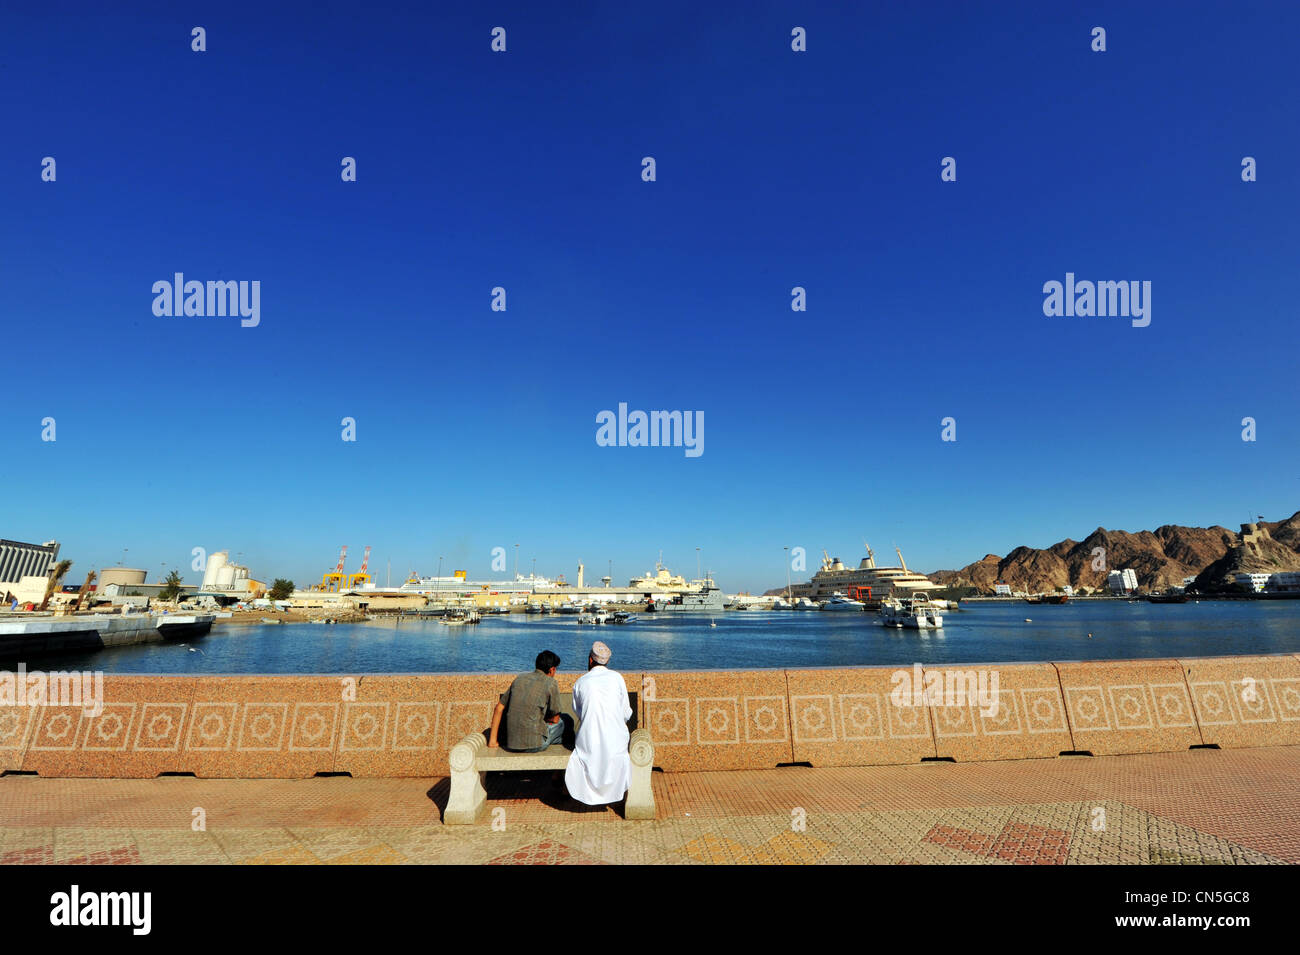 Sultanat d'Oman, Muscat, Muttrah zone portuaire, Omani men assis sur un banc public sur la Corniche Banque D'Images